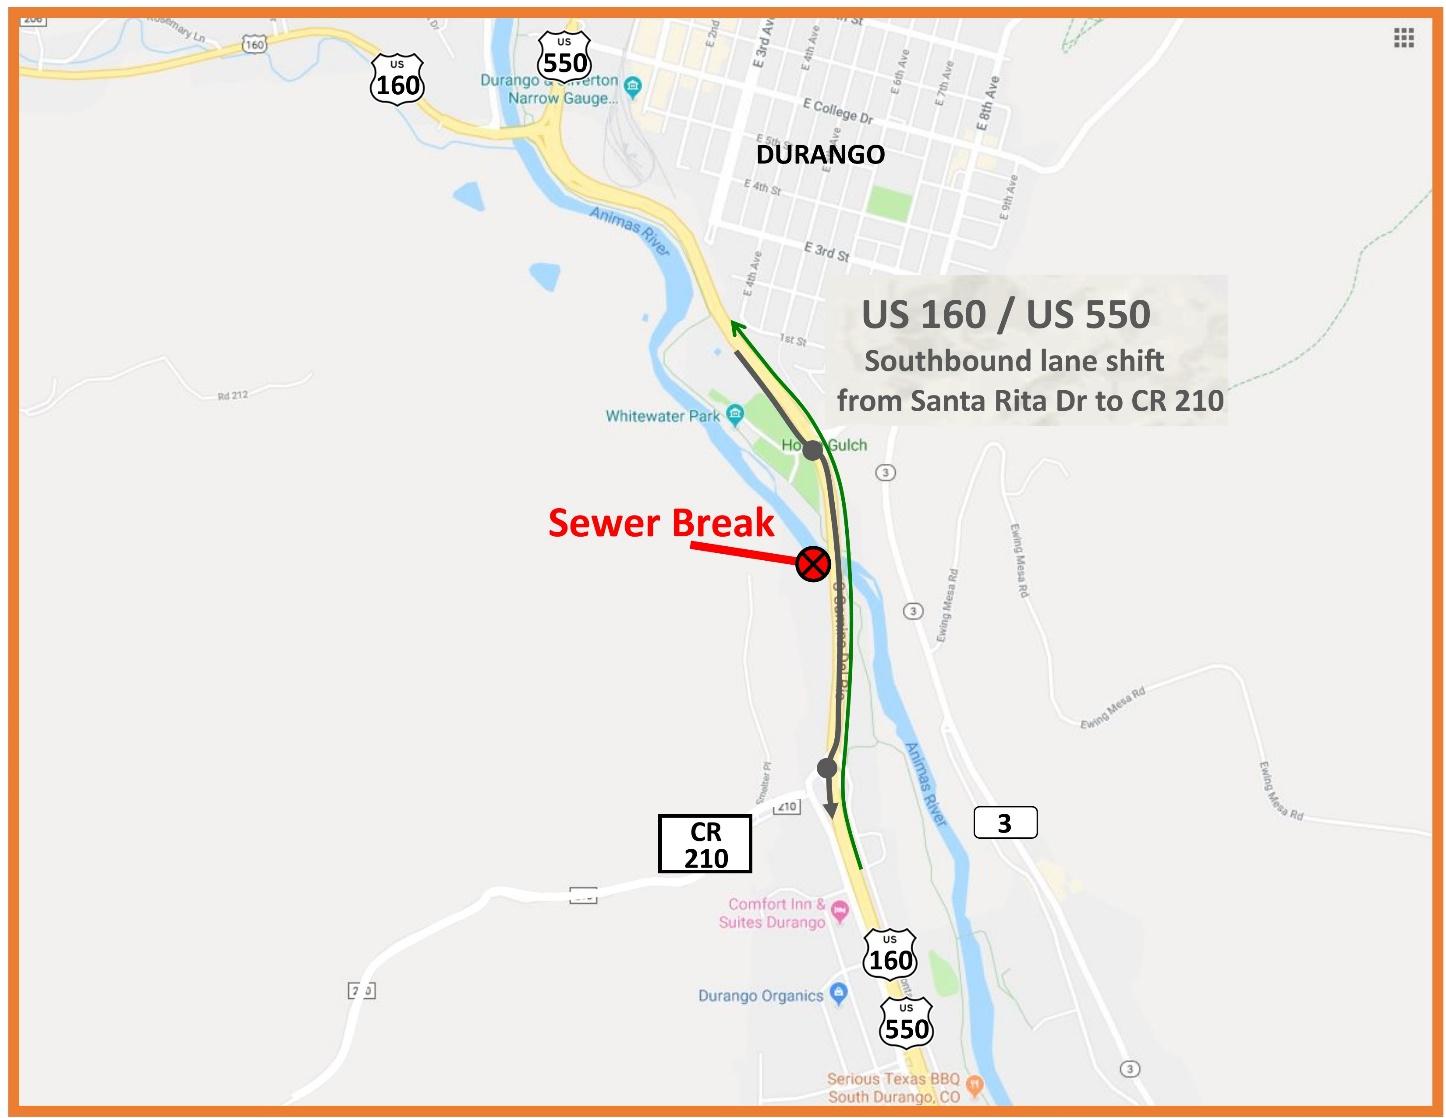 US 550 Sewage Break Map detail image